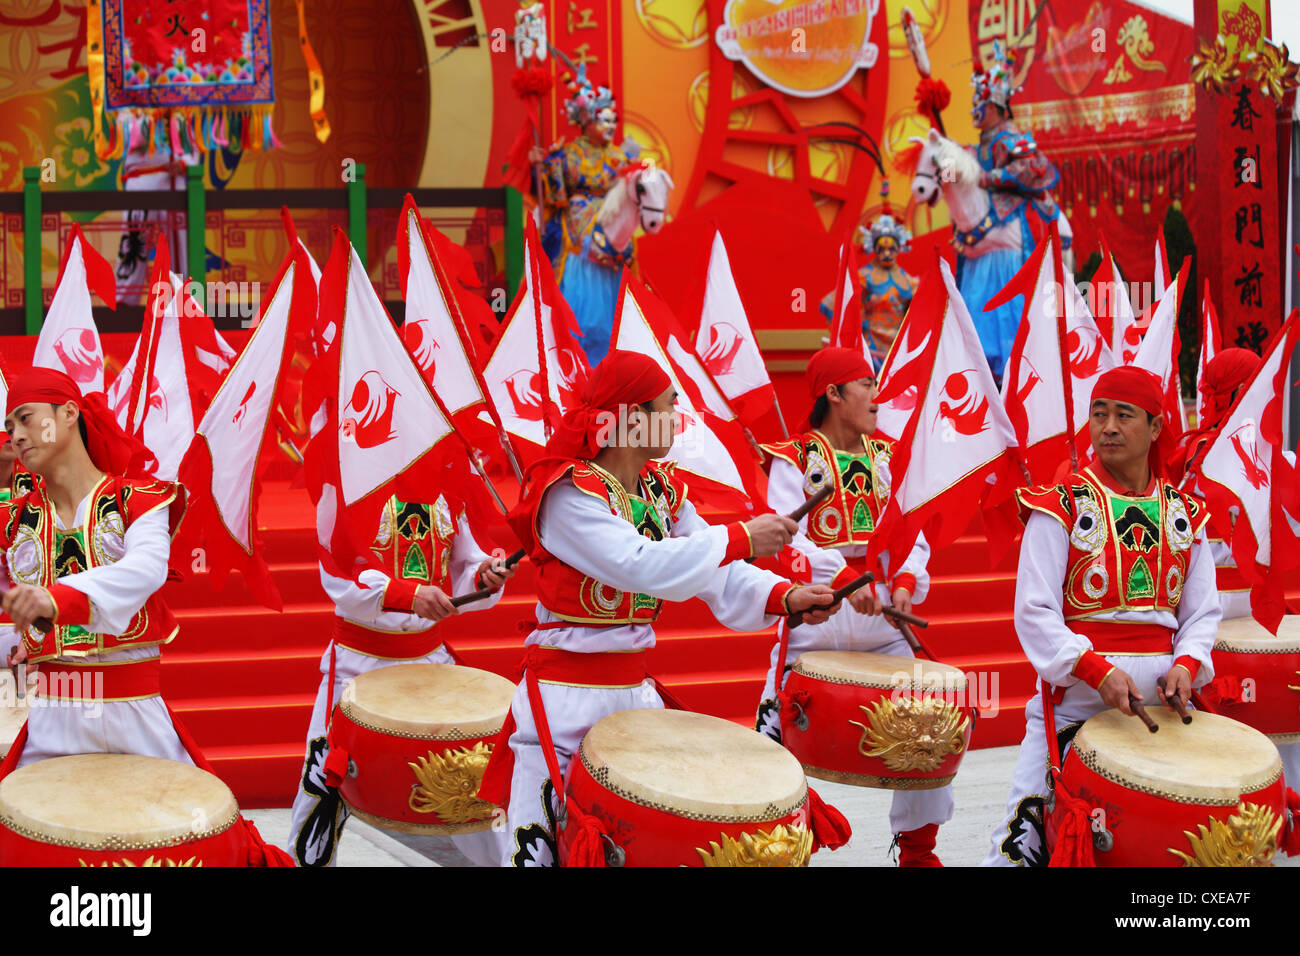 Rosso e oro, tamburi e bandiere rosse Foto Stock